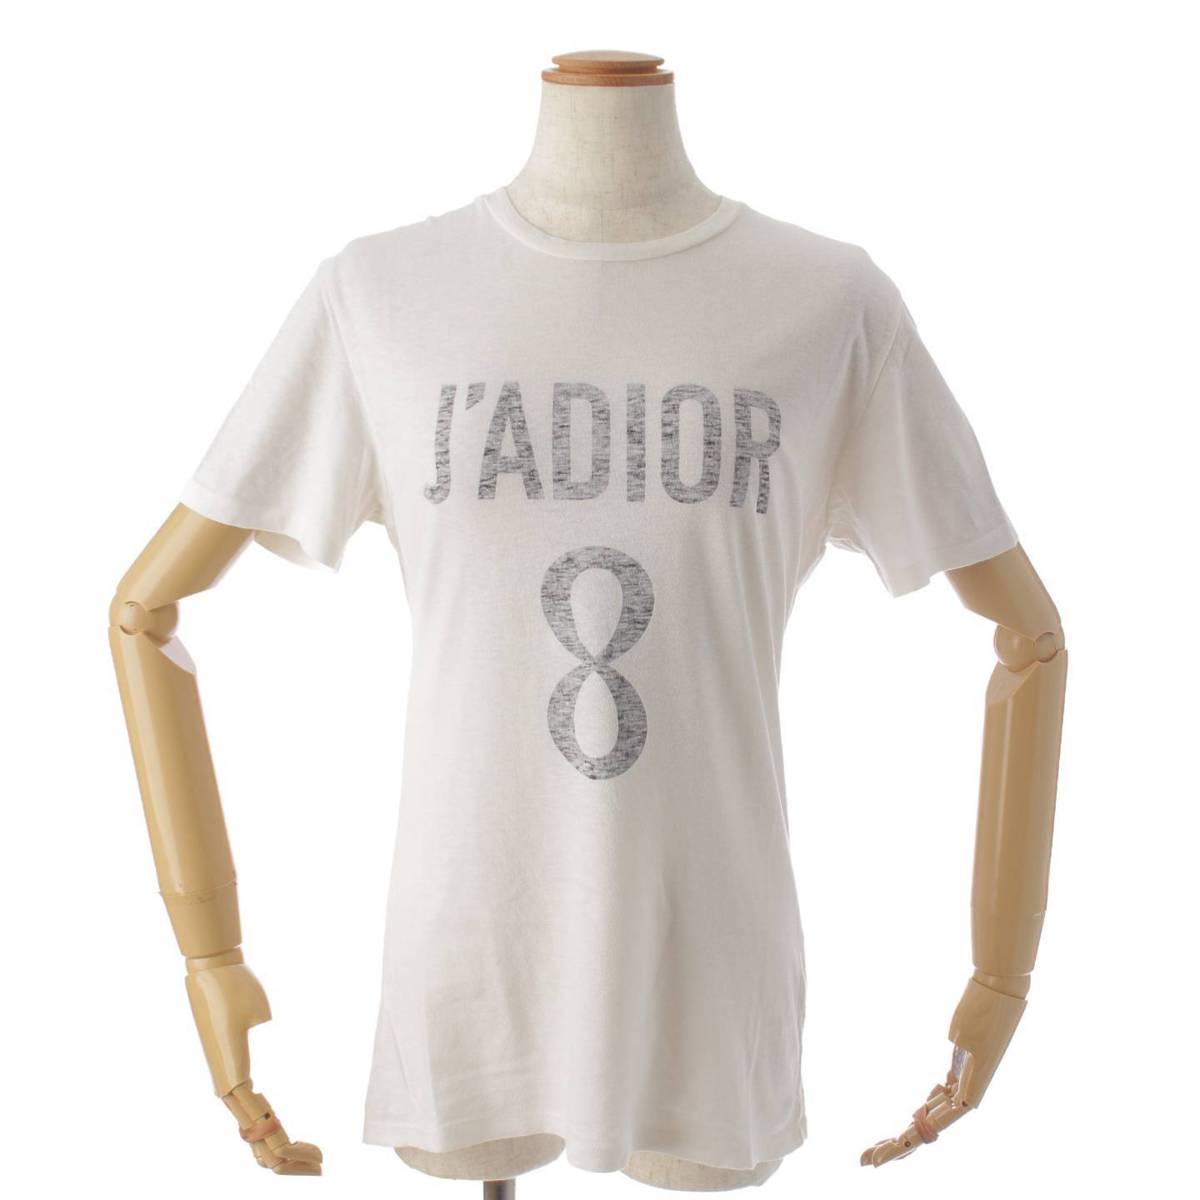 ディオール(DIOR) JA’DIOR 8 半袖 コットン Tシャツ カットソー トップス 843T03TC428 アイボリー XS